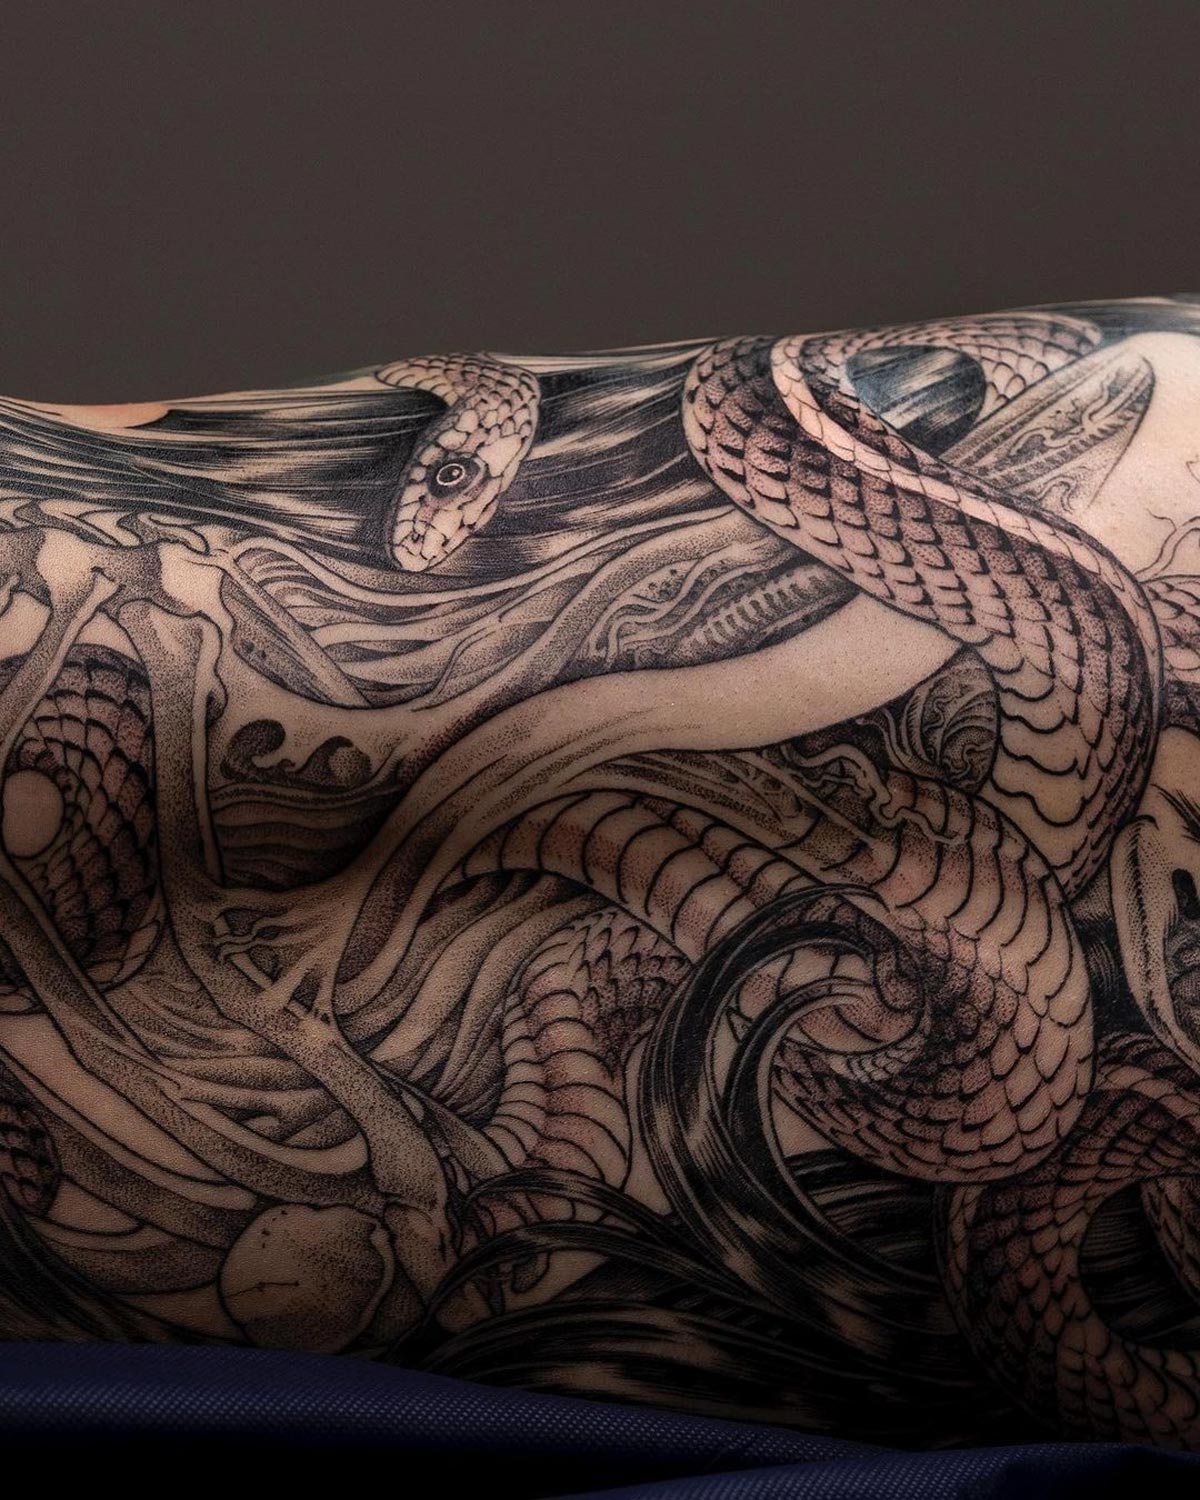 Medusa Girl's Full Back Tattoo | Best Tattoo Ideas For Men & Women